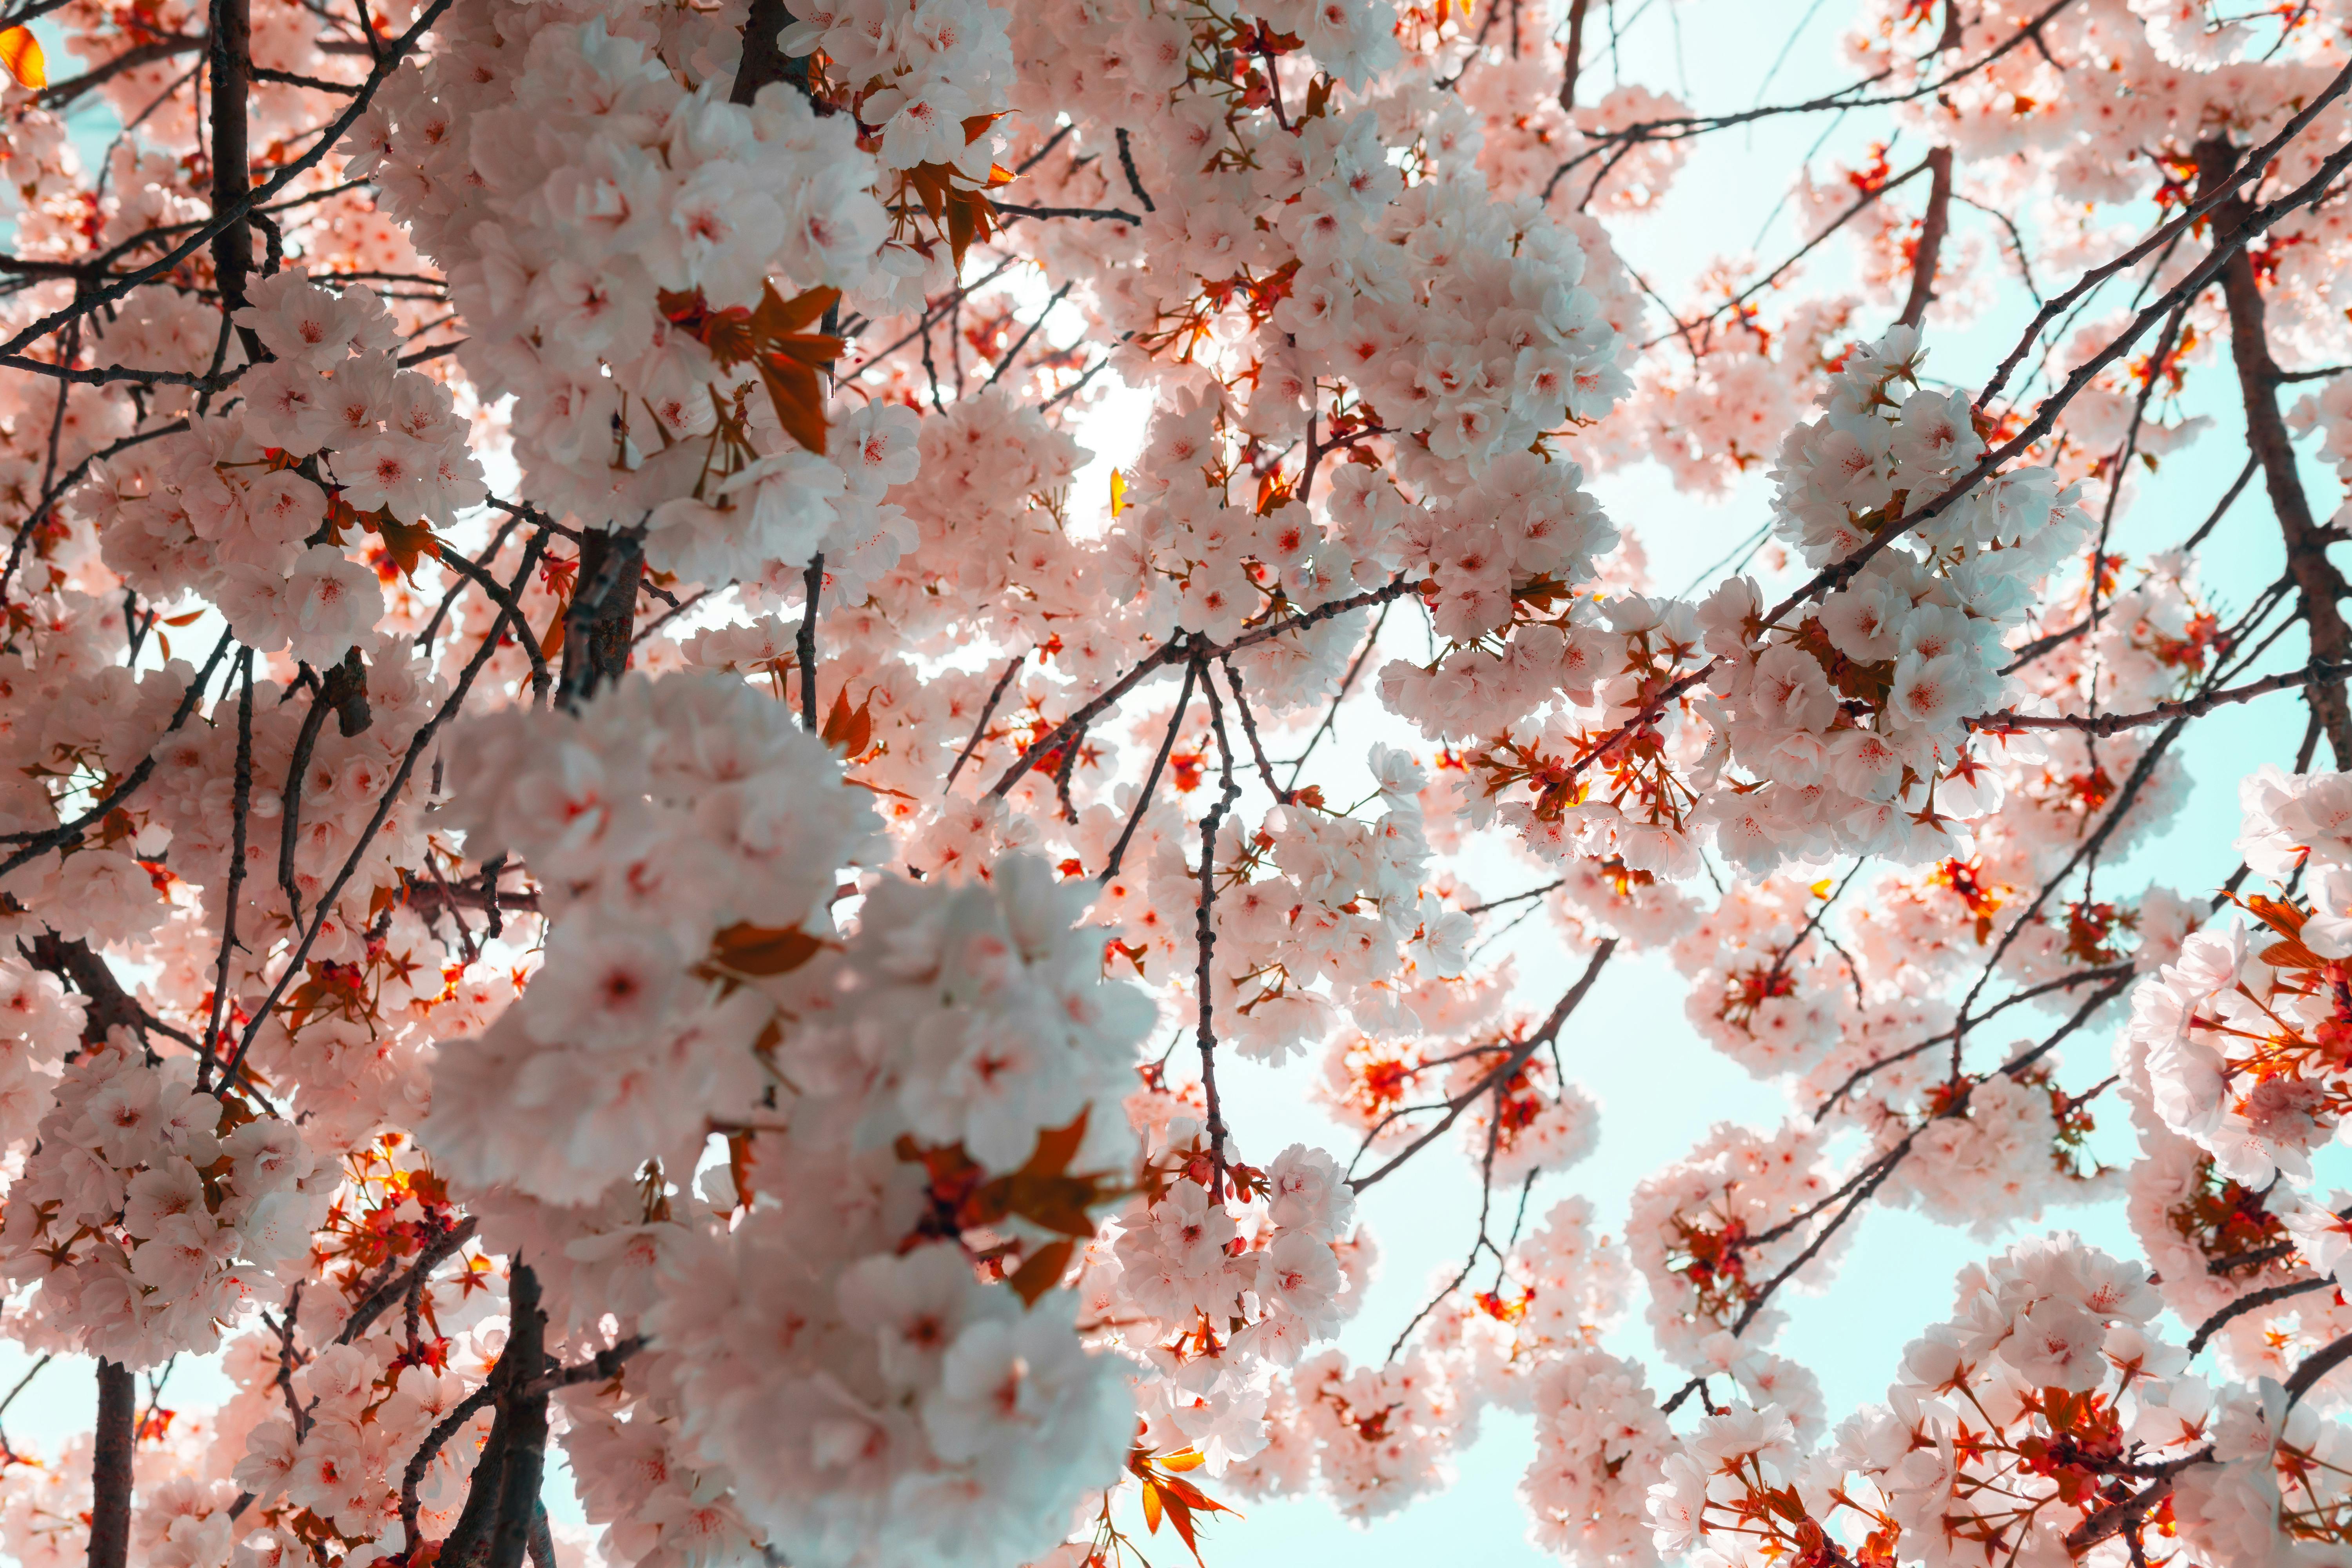 Sakura Sakura: Talking About Cherry Blossoms in Japanese | Tokyo Weekender